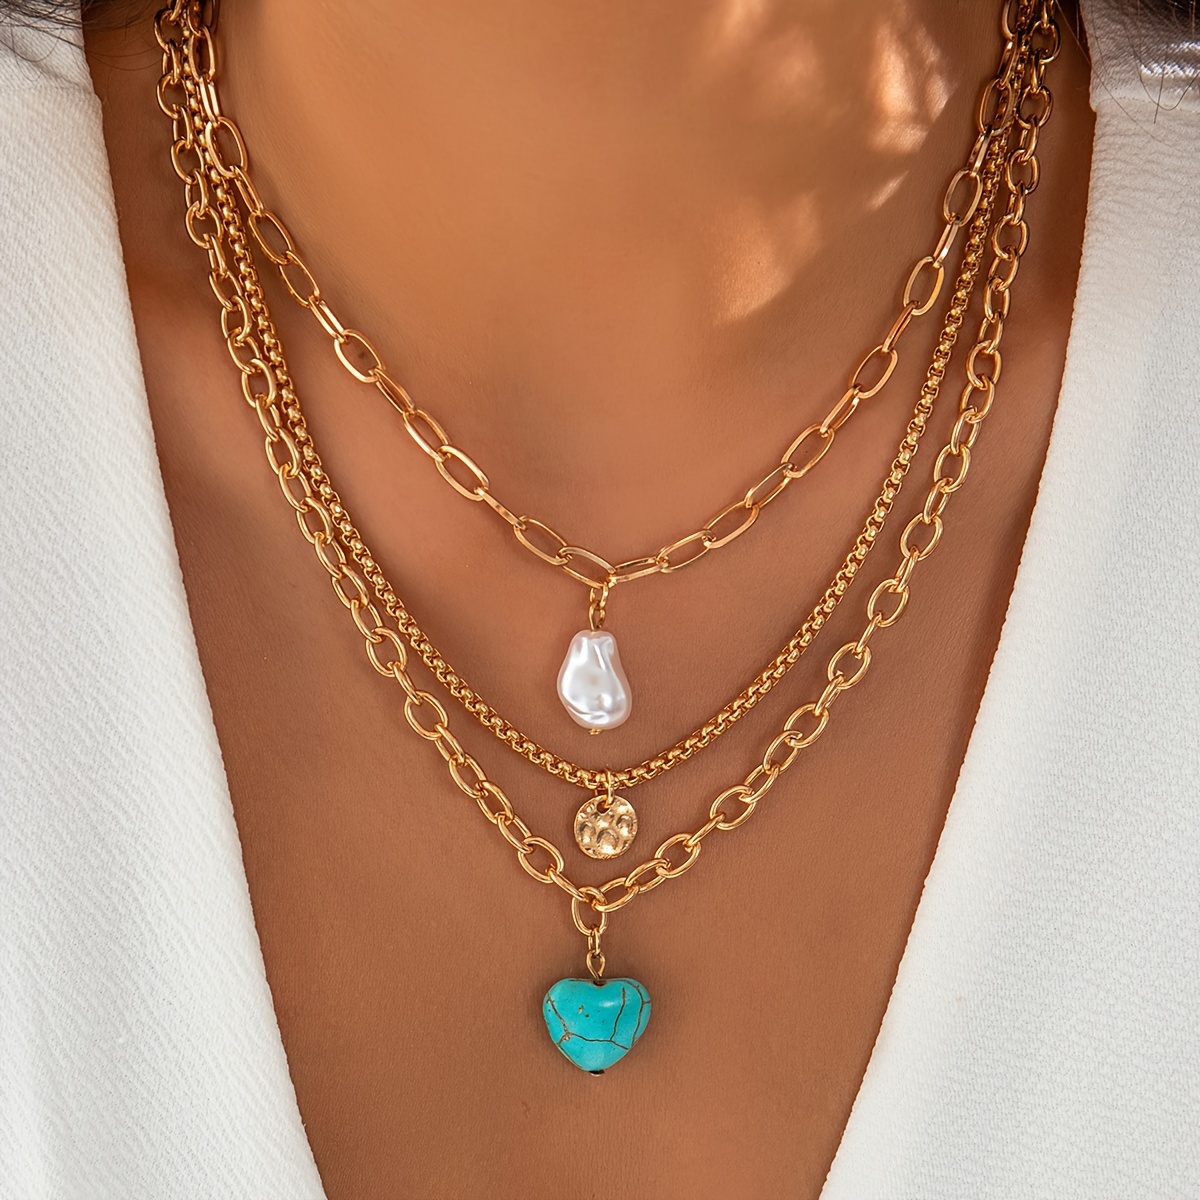 

3pcs/set Vintage Simple Love Turquoise Sequin Faux Pearl Pendant Necklace Clavicle Chain